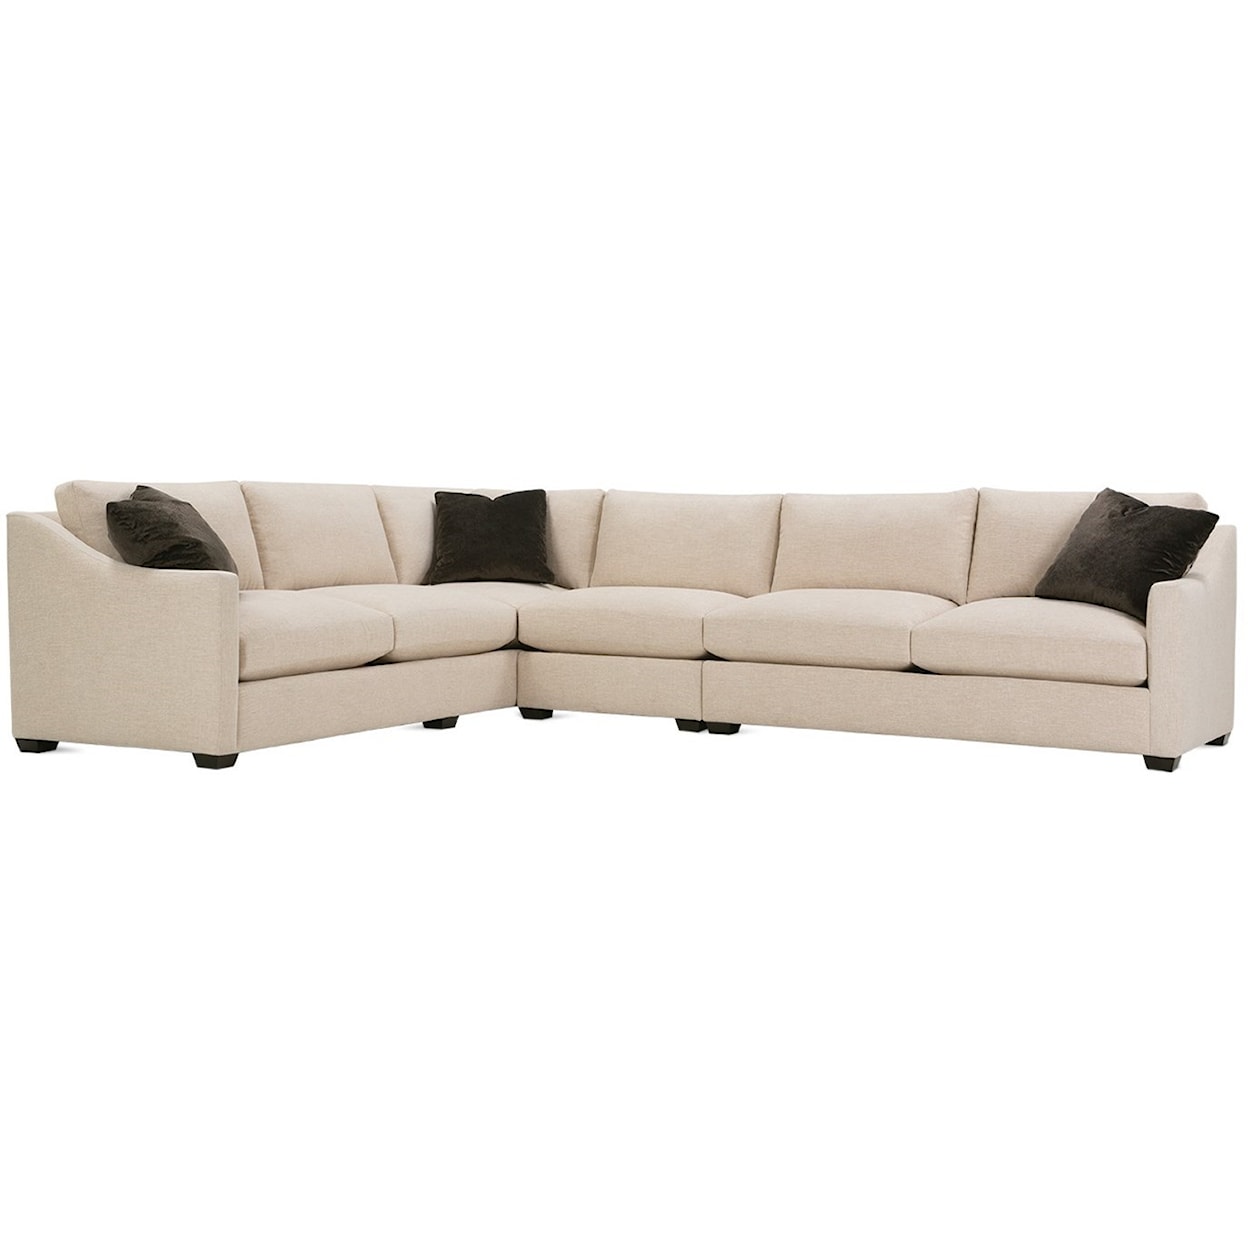 Rowe P603 Sectional Sofa